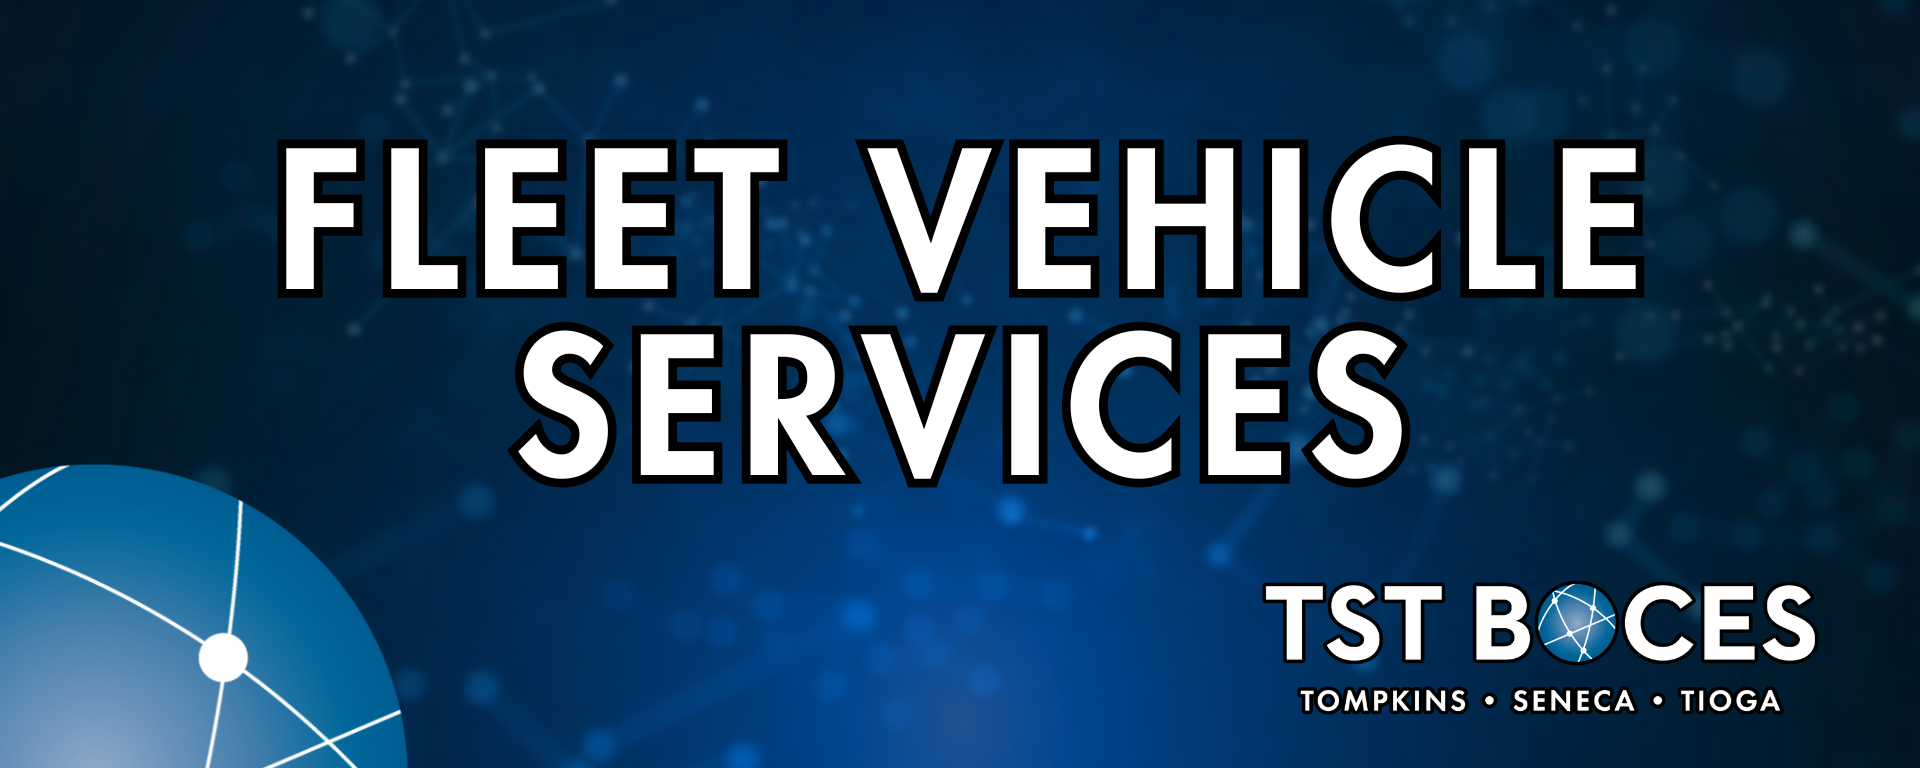 fleet vehicle services banner